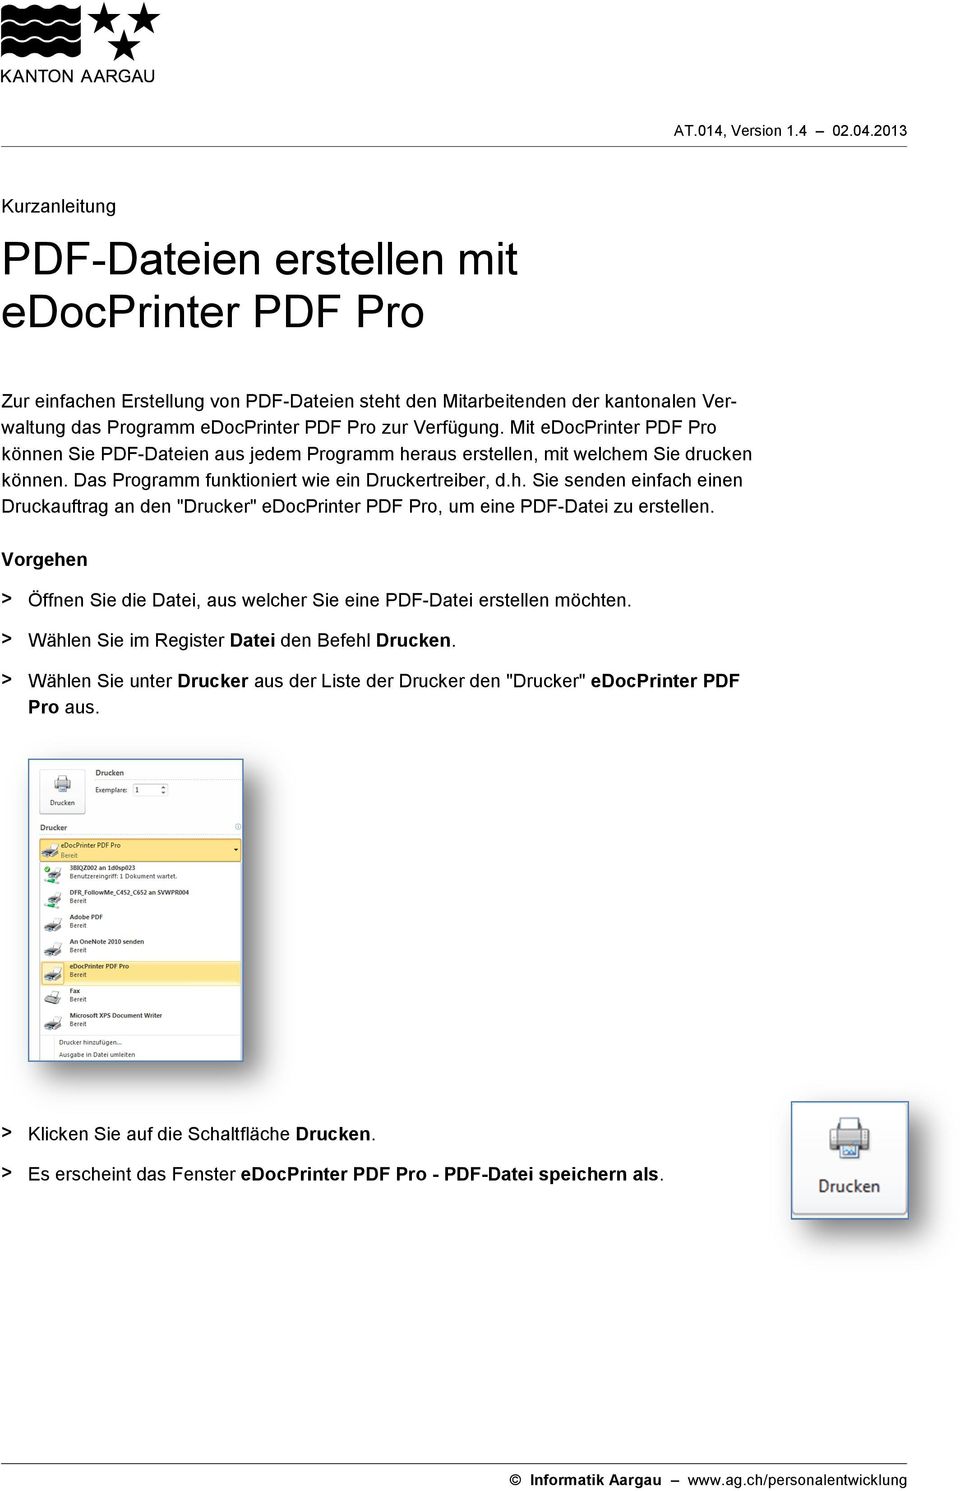 Verfügung. Mit edocprinter PDF Pro können Sie PDF-Dateien aus jedem Programm heraus erstellen, mit welchem Sie drucken können. Das Programm funktioniert wie ein Druckertreiber, d.h. Sie senden einfach einen Druckauftrag an den "Drucker" edocprinter PDF Pro, um eine PDF-Datei zu erstellen.